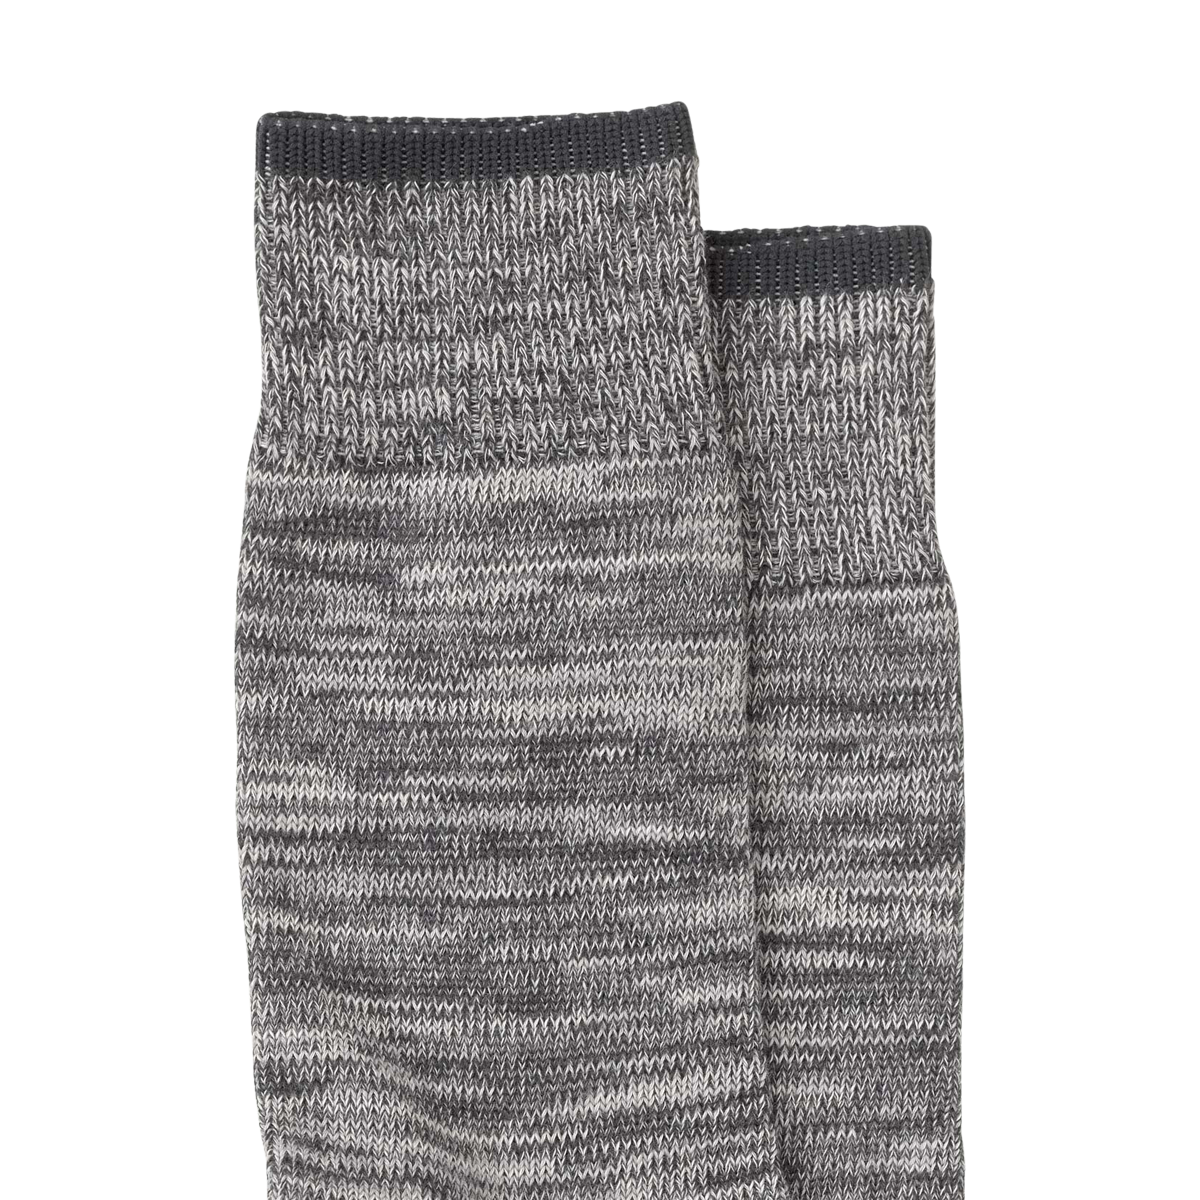 Nudie Jeans Rasmusson Multi Yarn Socks - Dark Grey